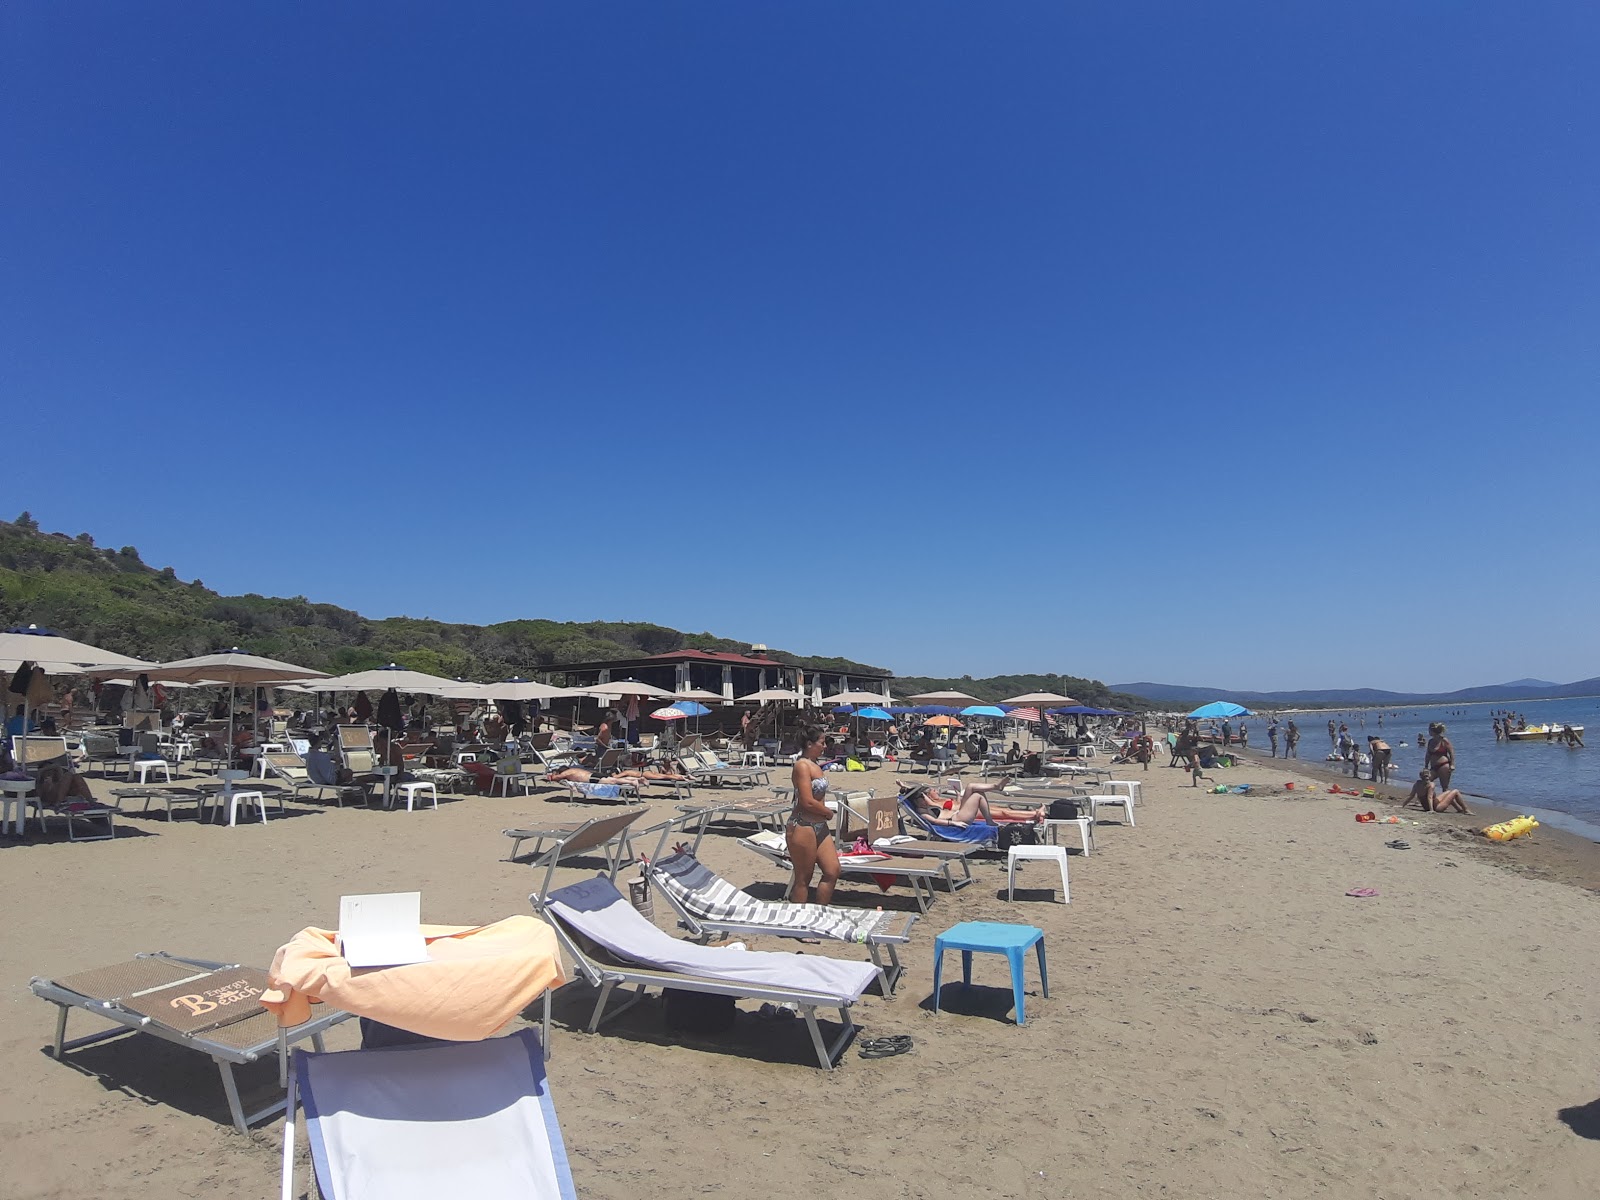 Foto de Spiaggia della Feniglia - lugar popular entre los conocedores del relax